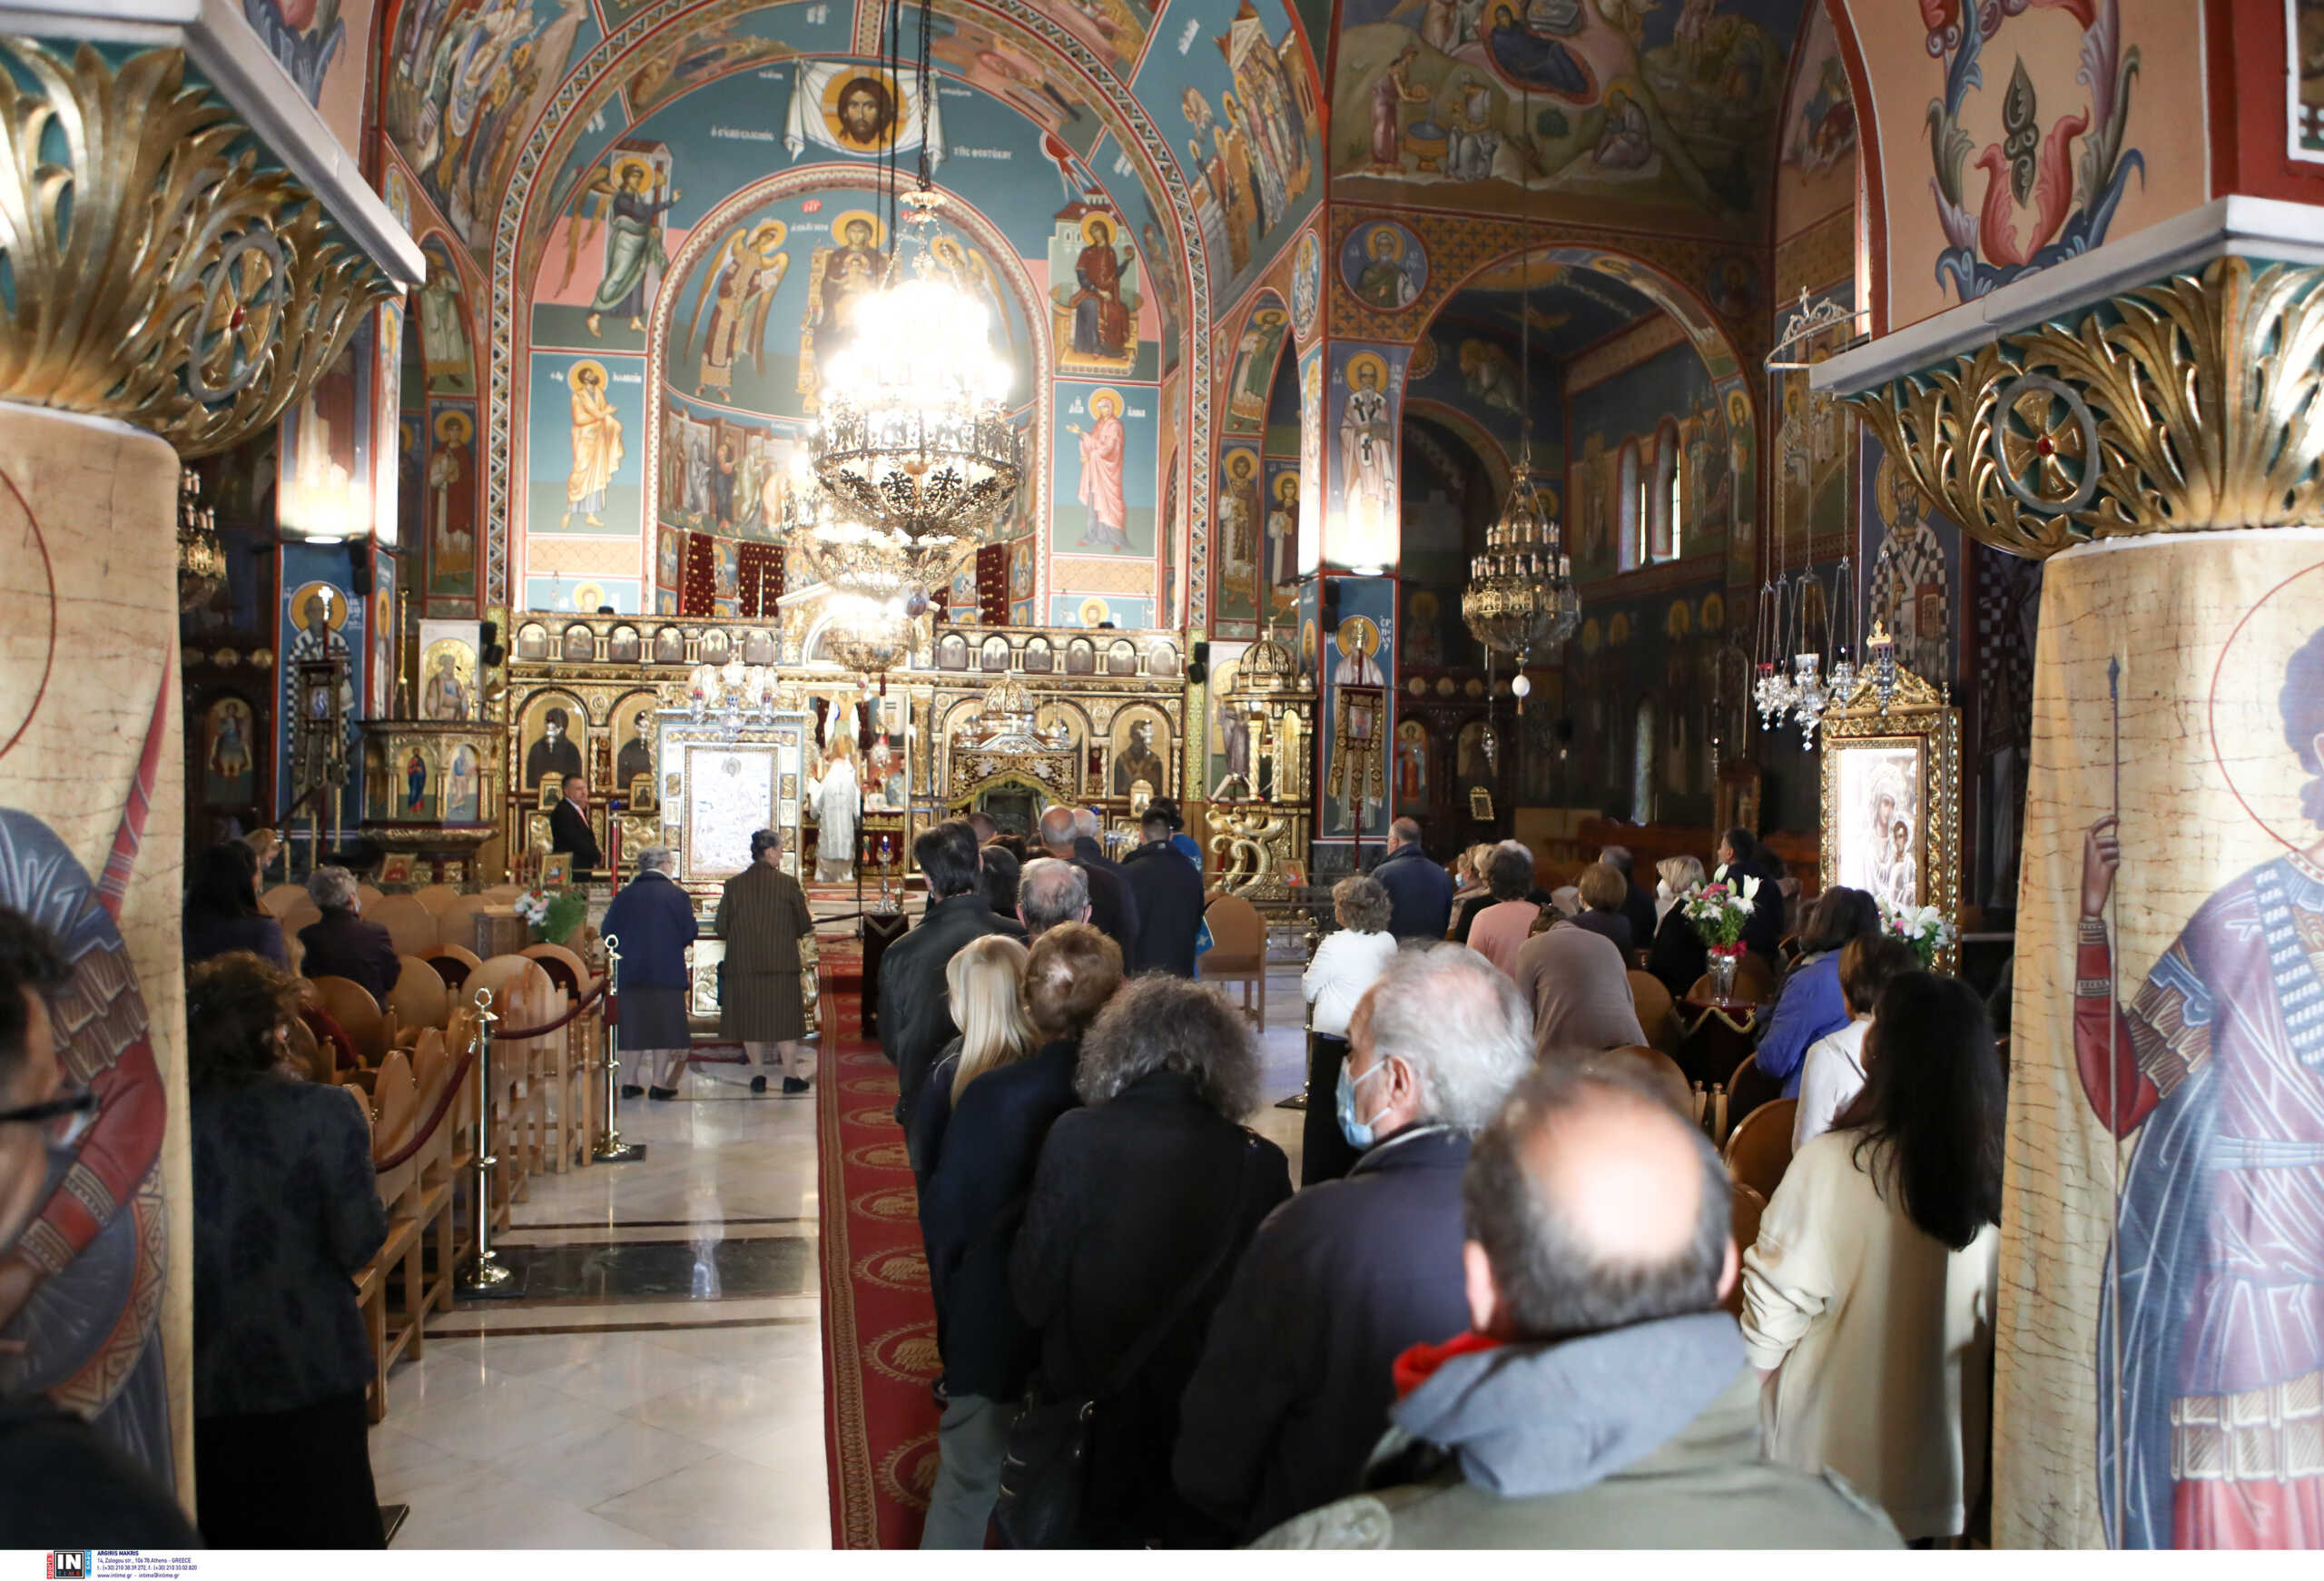 Σέρρες: Φυλάκιση 30 μηνών σε μητροπολίτη και πρωτοσύγγελο για υπεξαίρεση μνημείων από εκκλησία